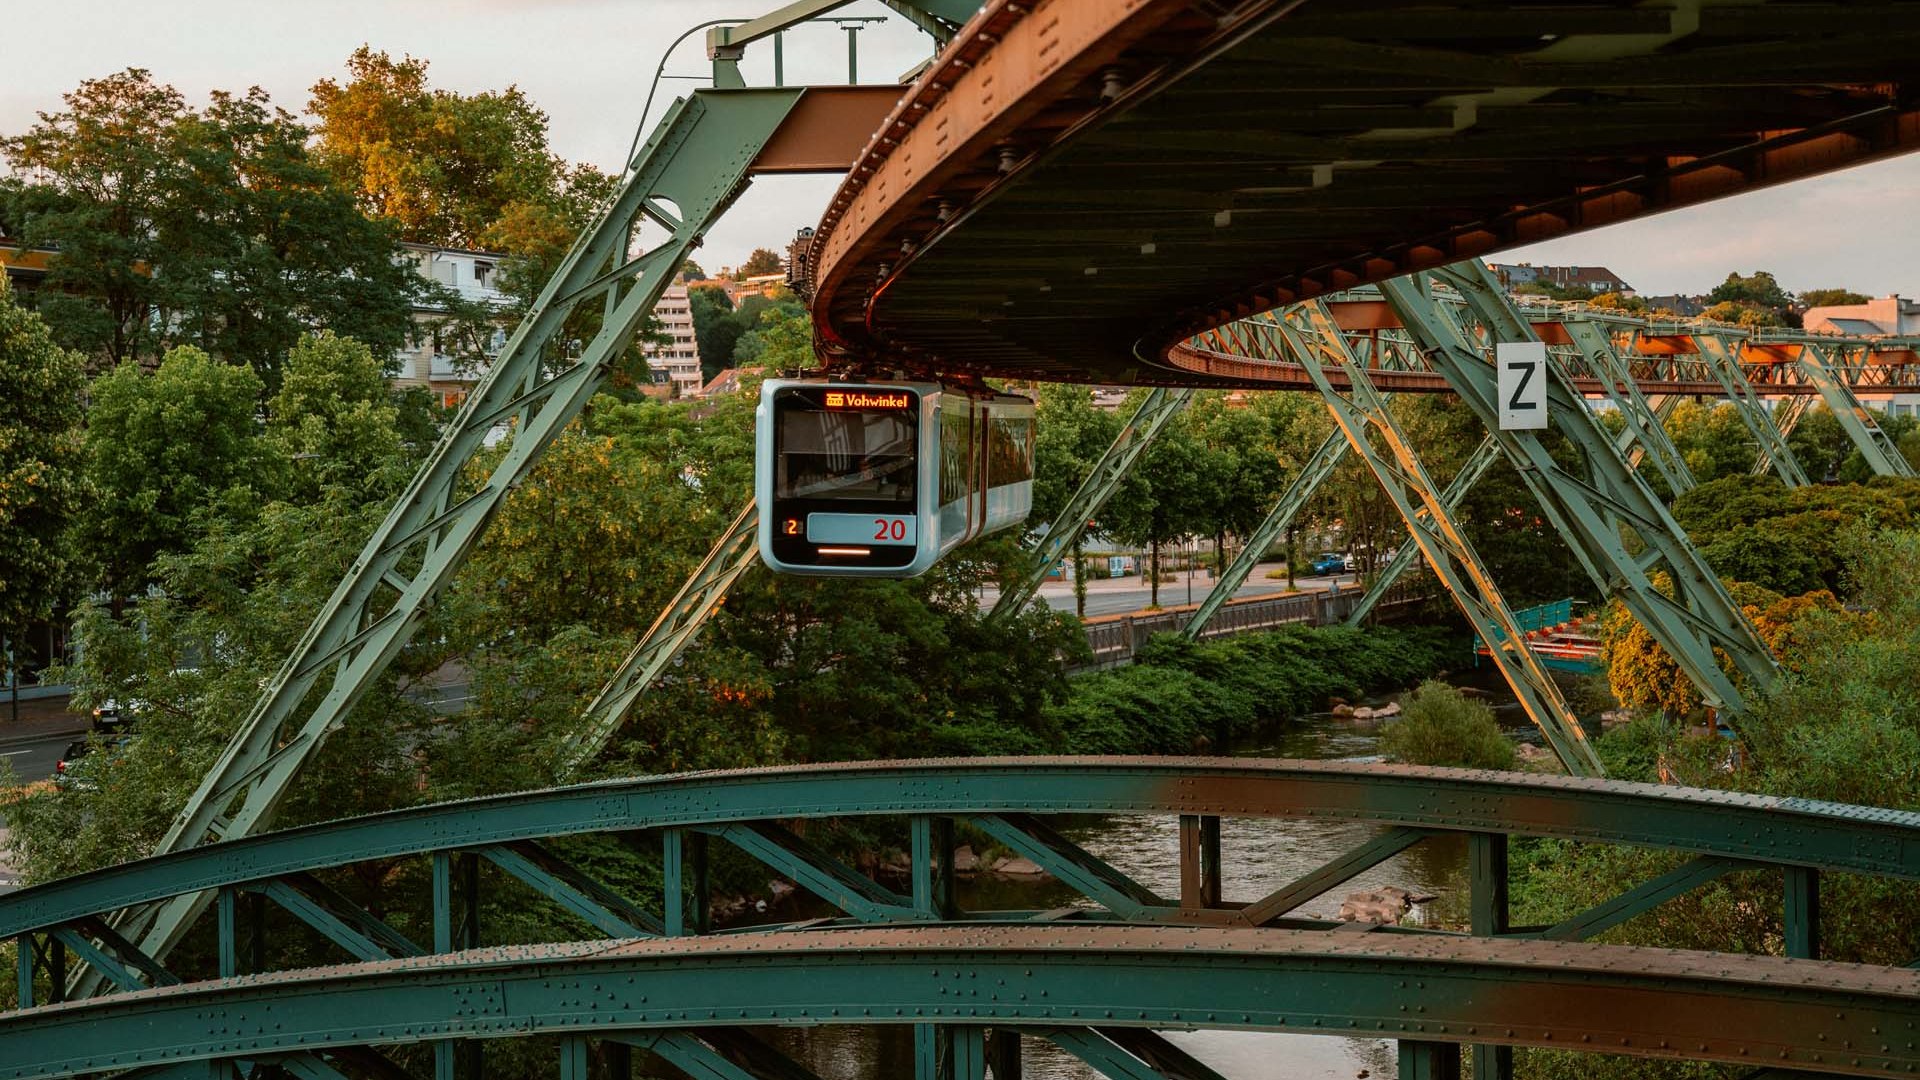 Schwebebahn von einer Brücke, © Johannes Höhn